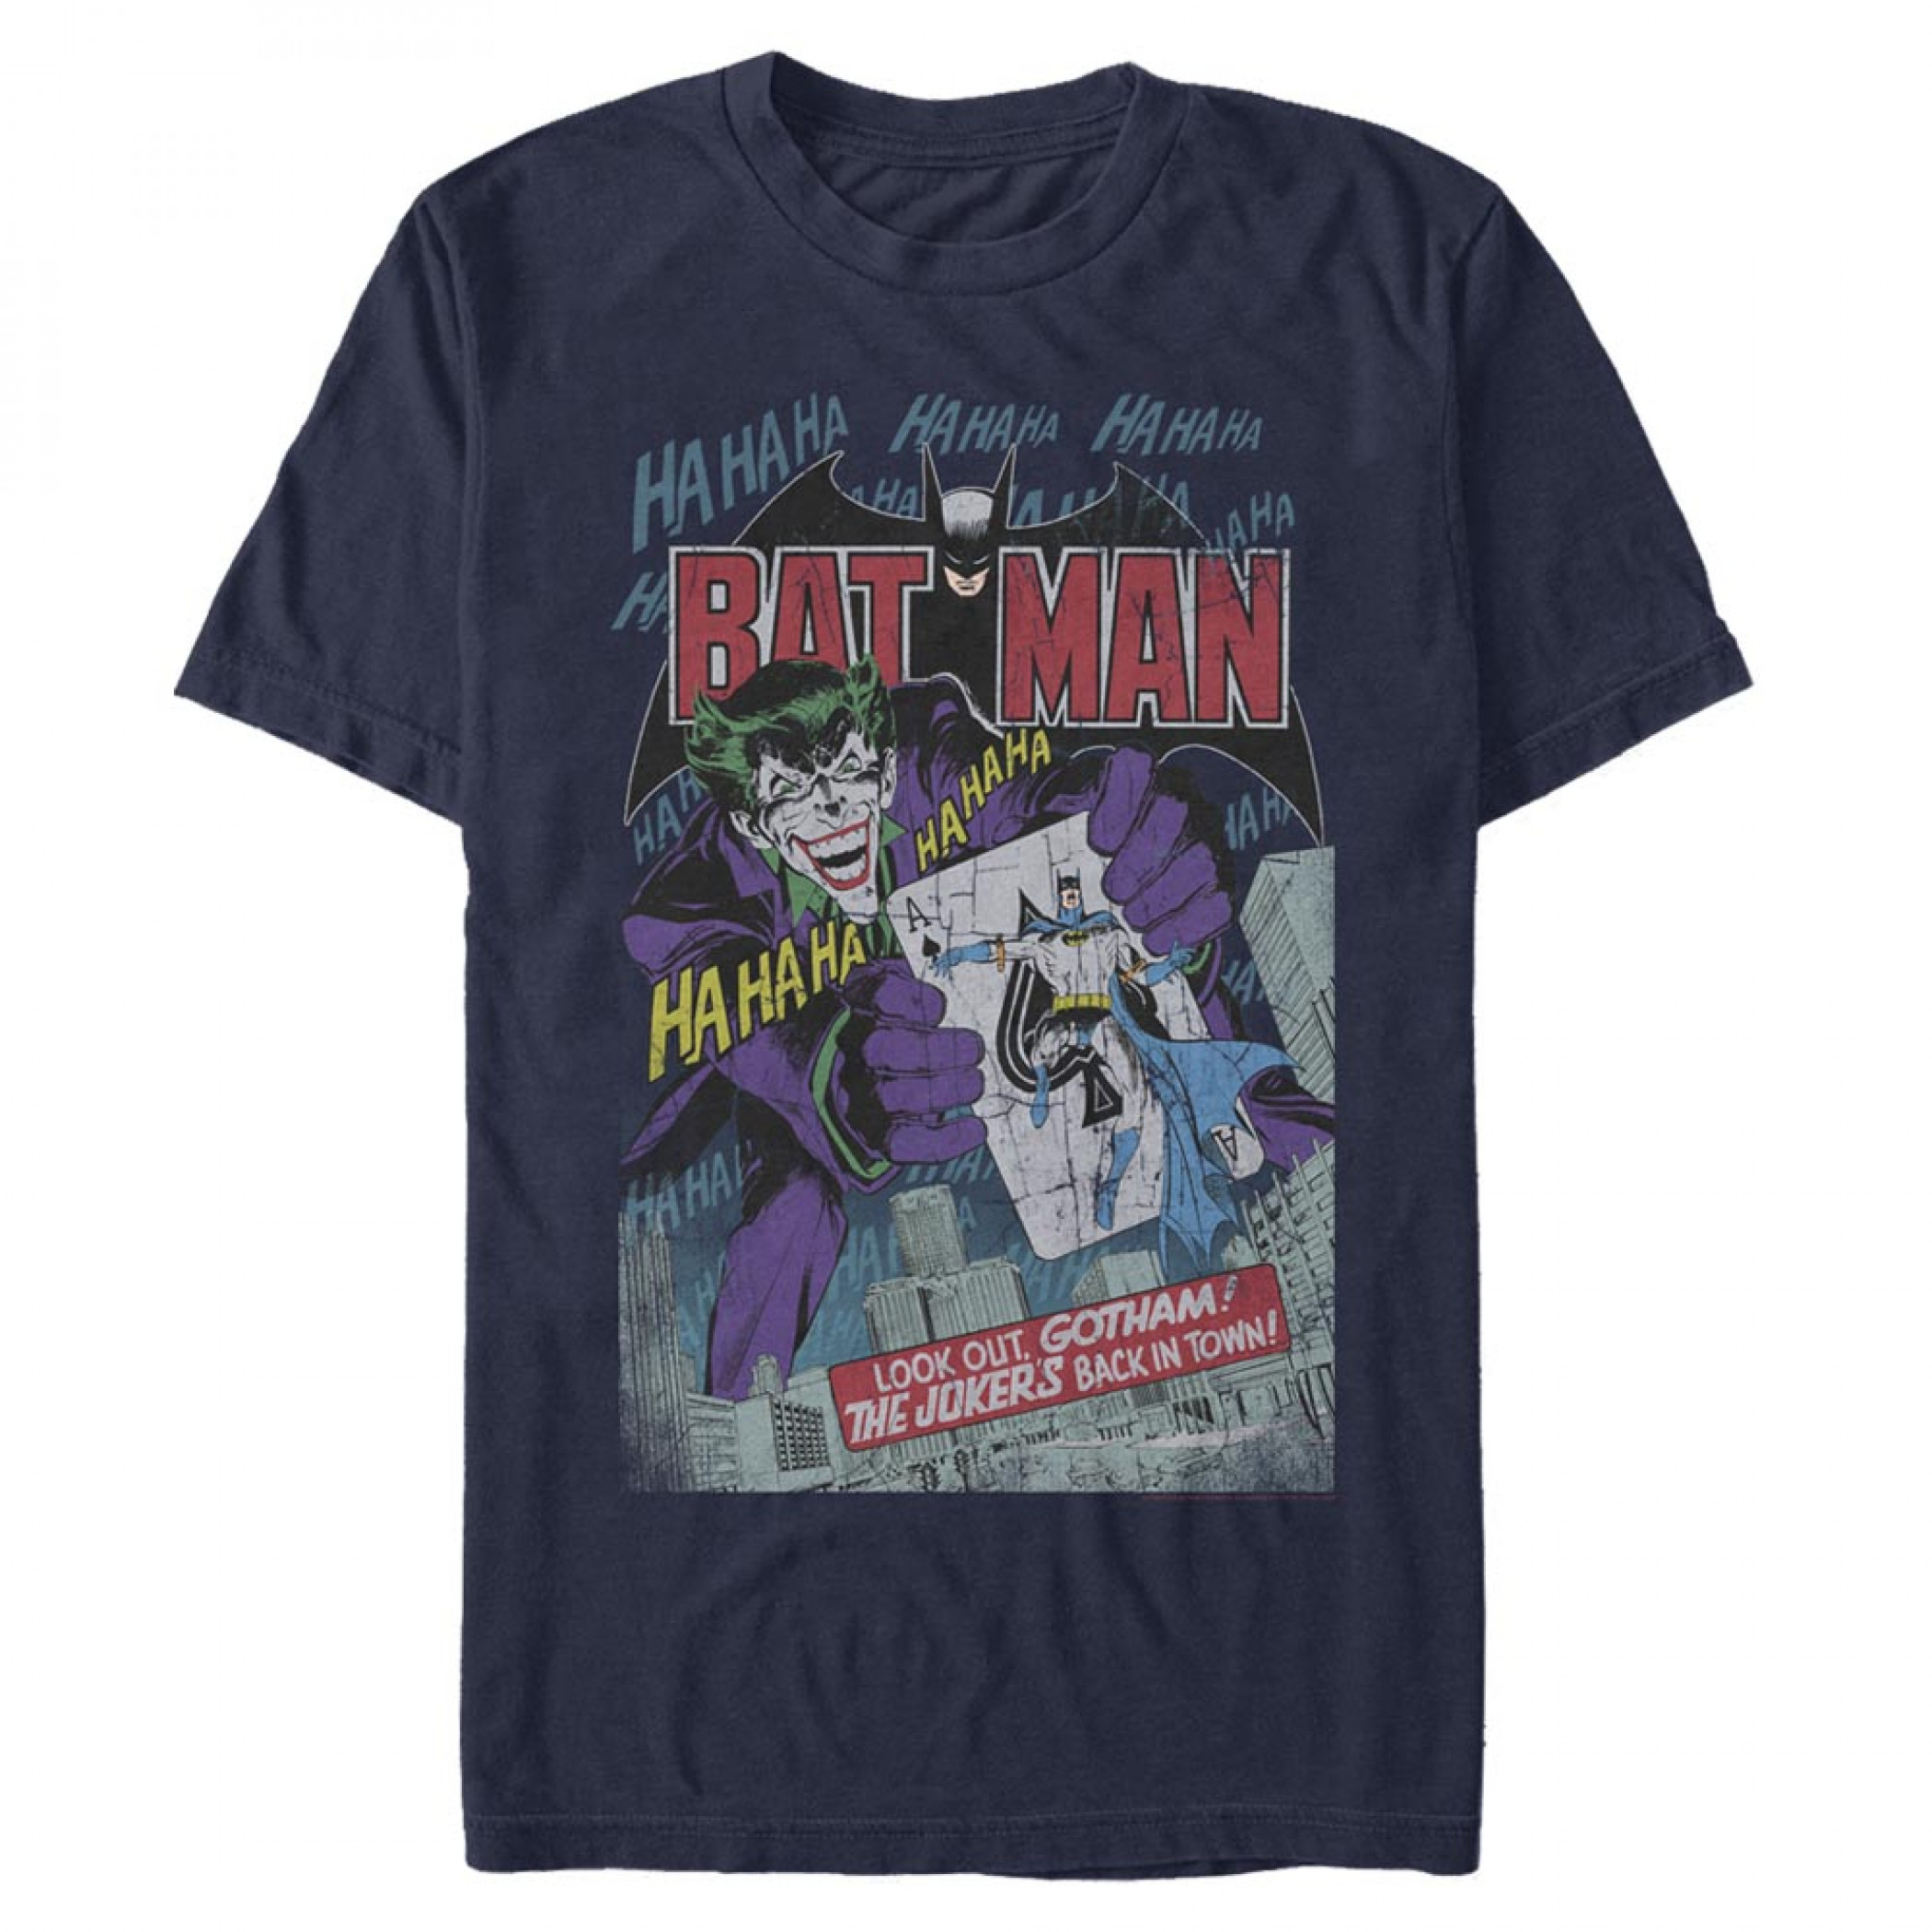 The Joker's Back In Town Batman T-Shirt